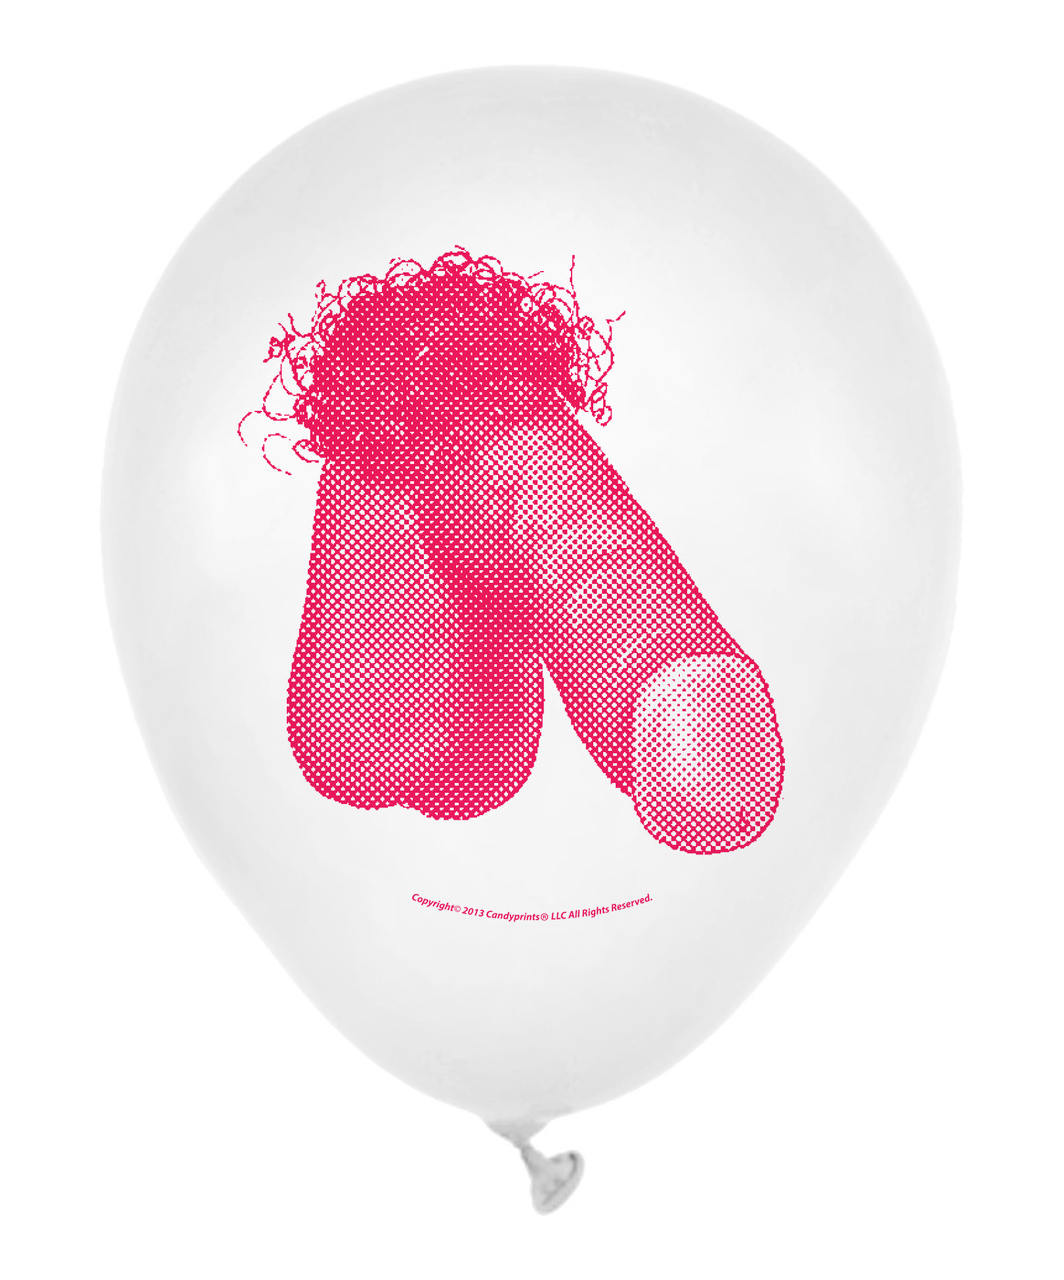 Little Genie Dirty Balloons Penis надувные шары (7 шт.)